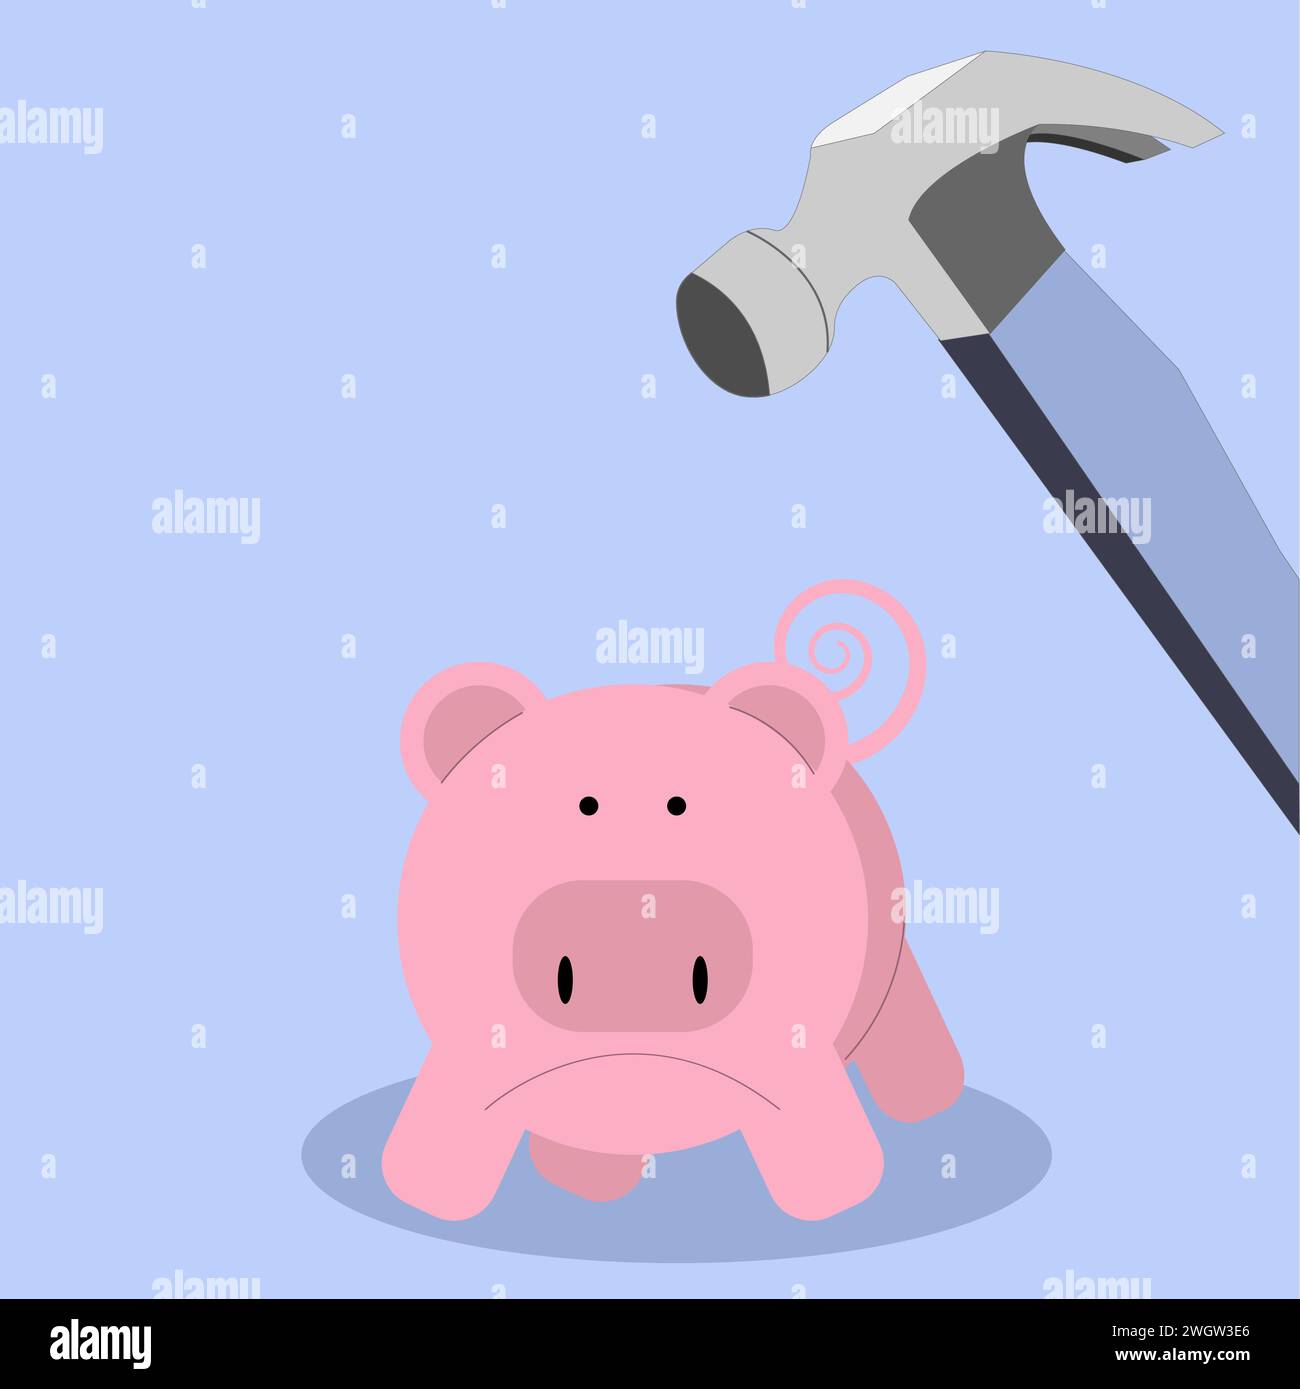 Hammer bricht in die Piggy Bank ein, taucht in das Sparkonzept ein oder nimmt es mit Stock Vektor